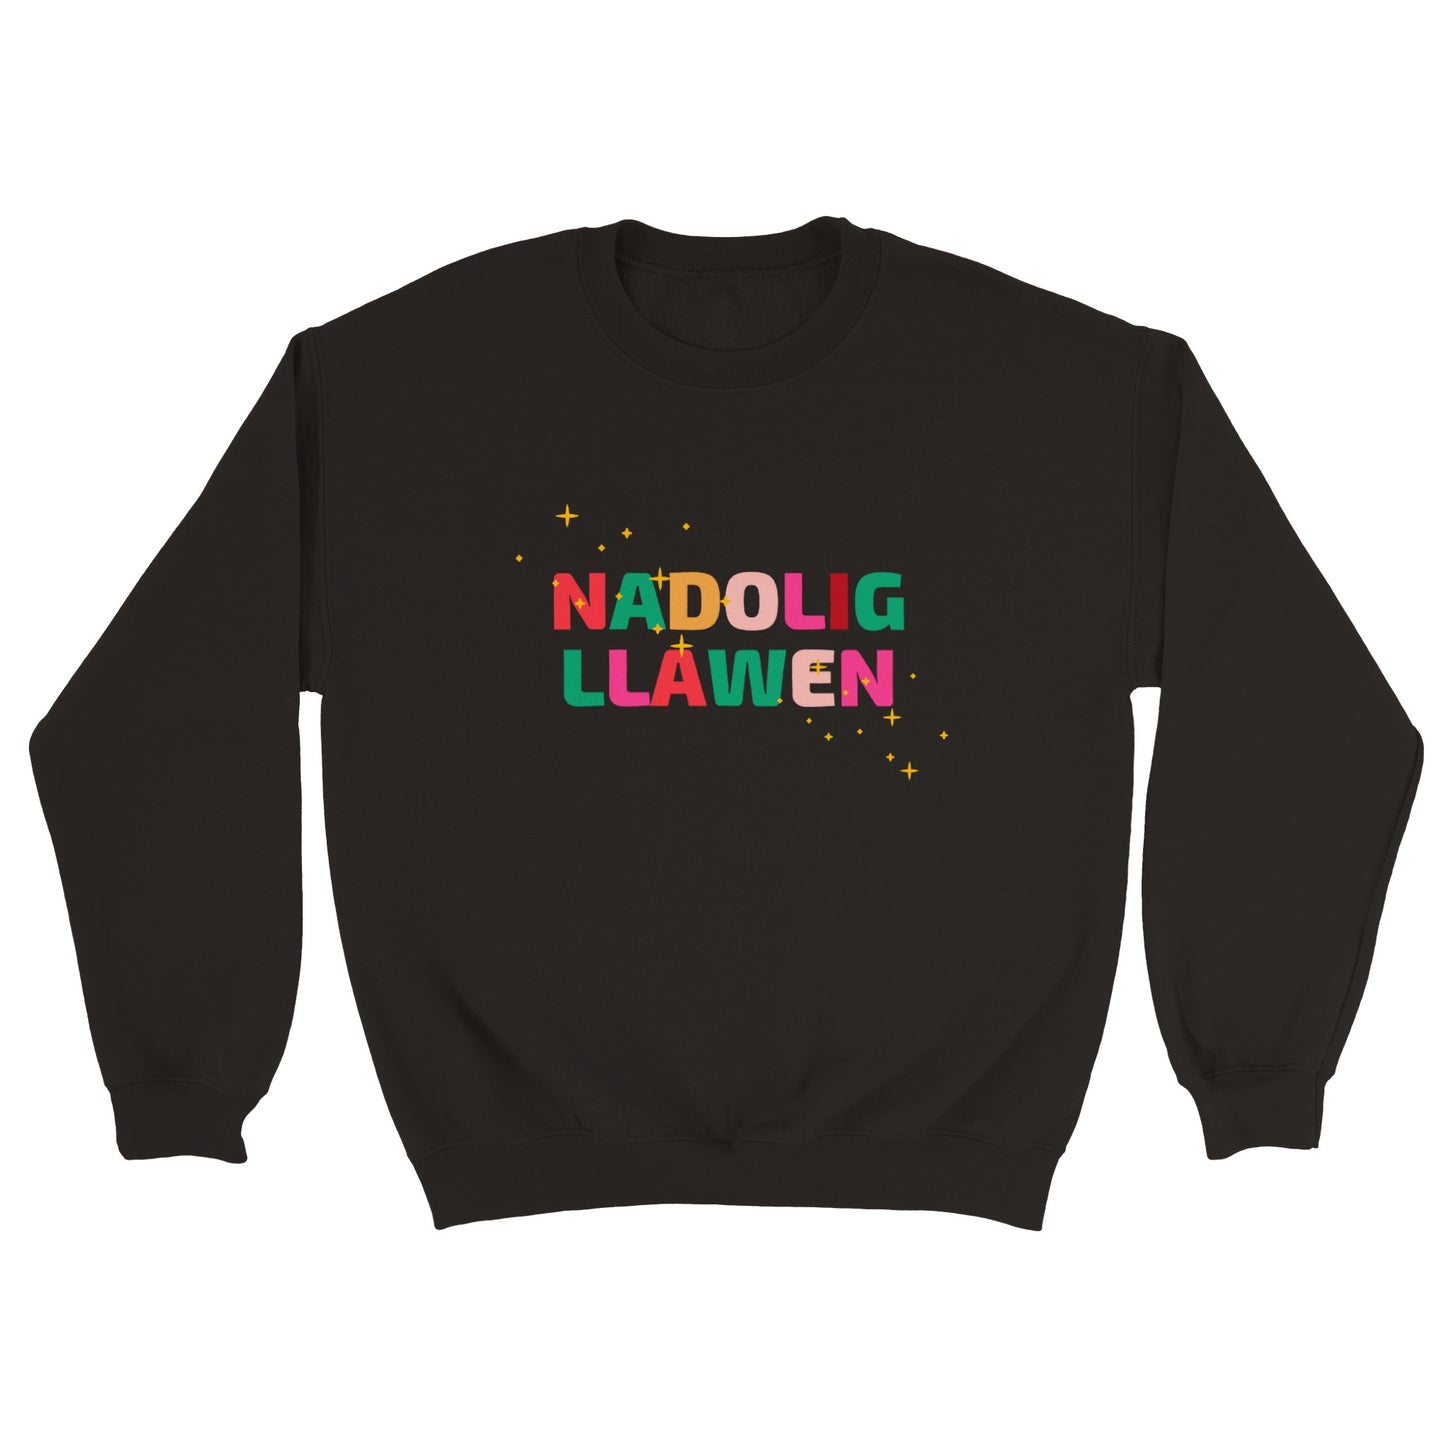 'Nadolig Llawen' (Merry Christmas) jumper / siwmper